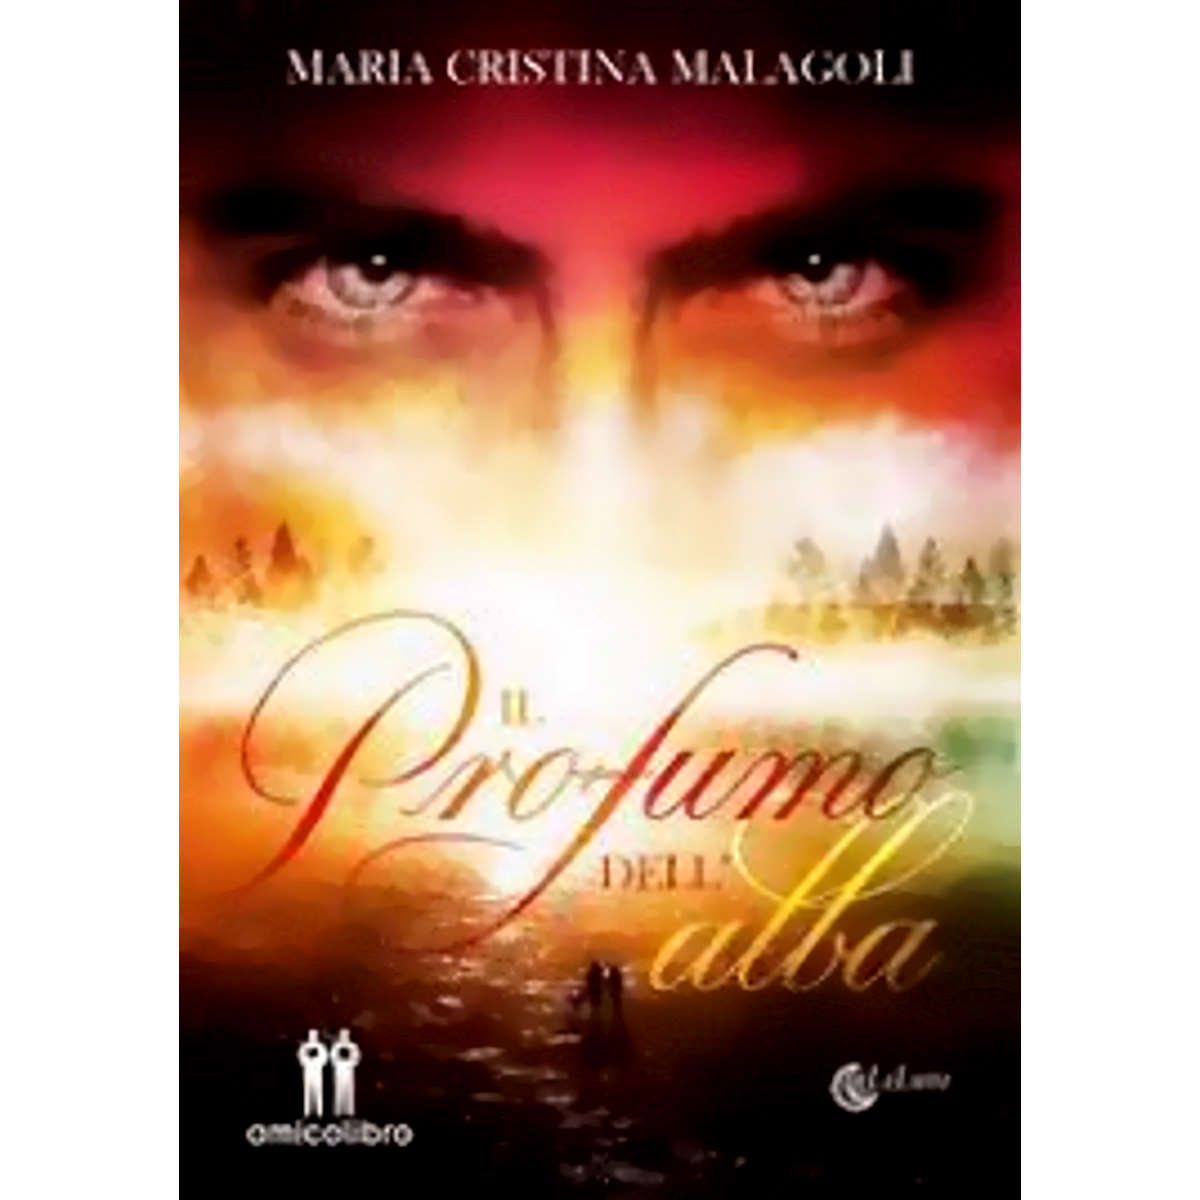 “Il profumo dell’alba” terzo incredibile libro di Maria Cristina Malagoli